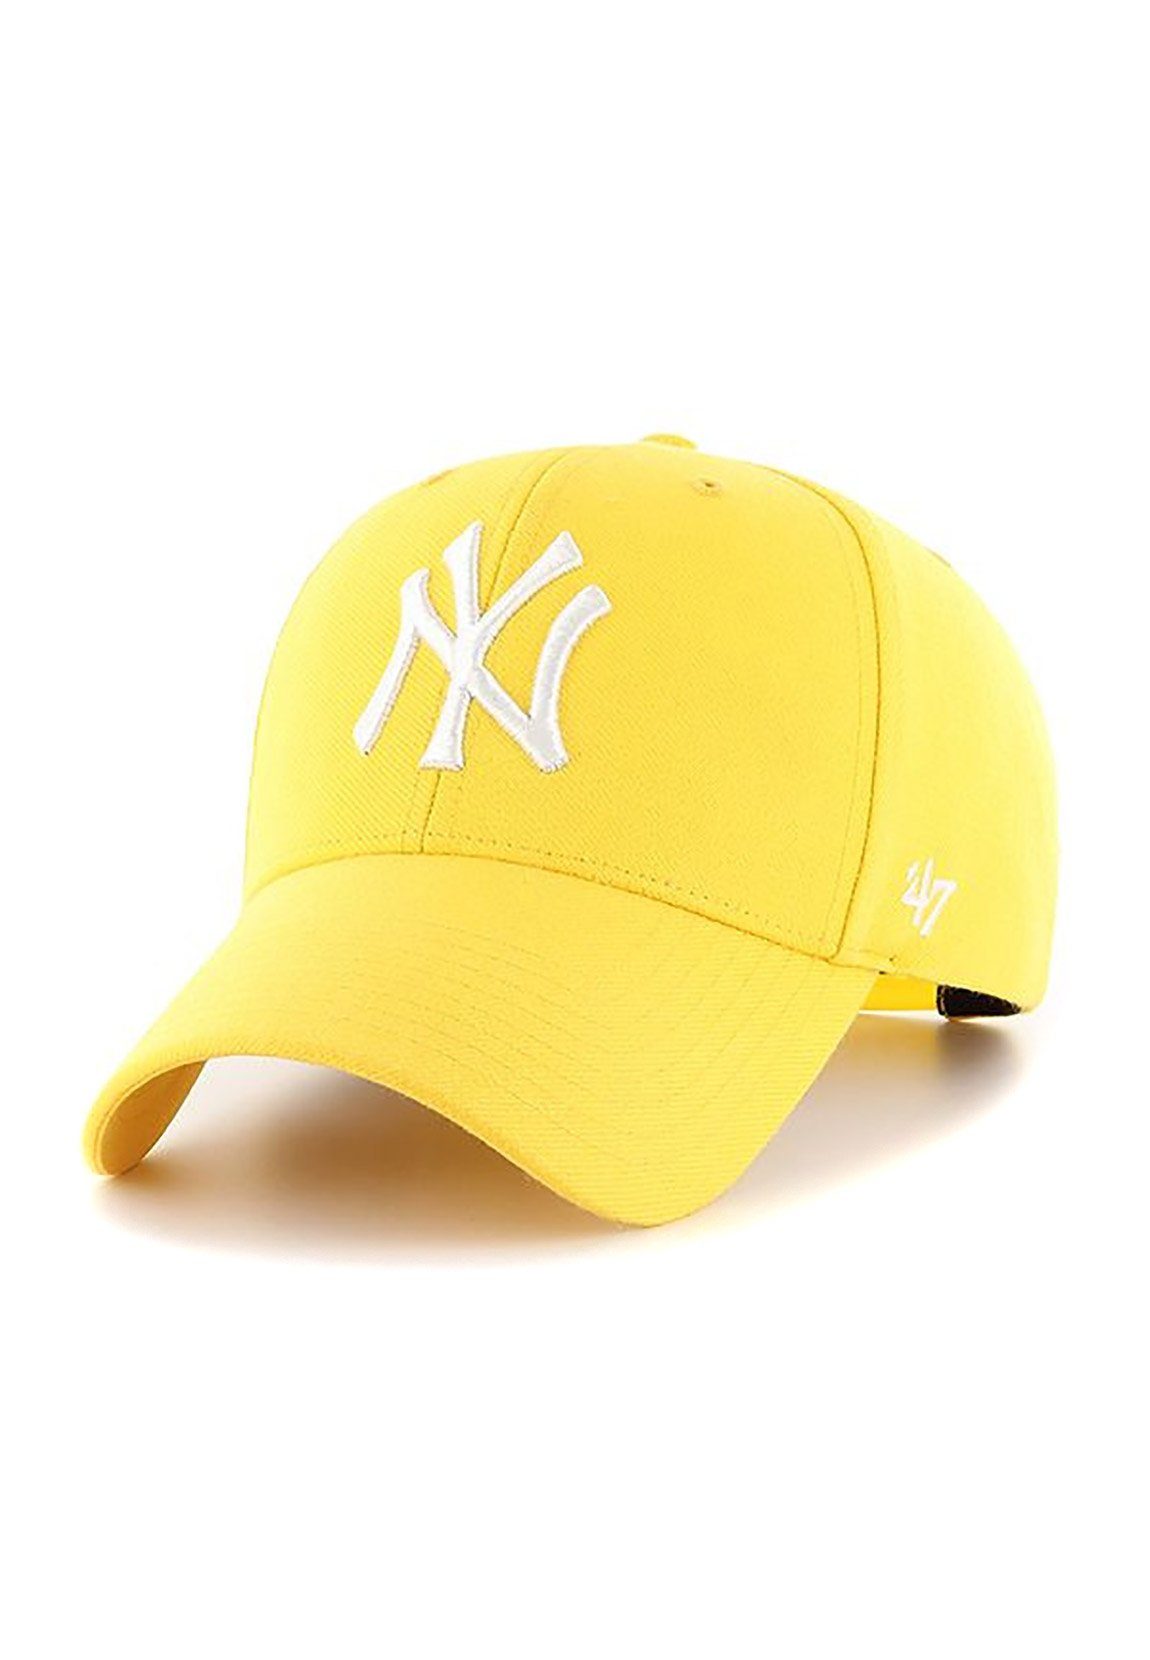 '47 Brand Baseball Cap 47 Brand MVP Adjustable Cap NY YANKEES B-MVPS17WBP-YE Yellow